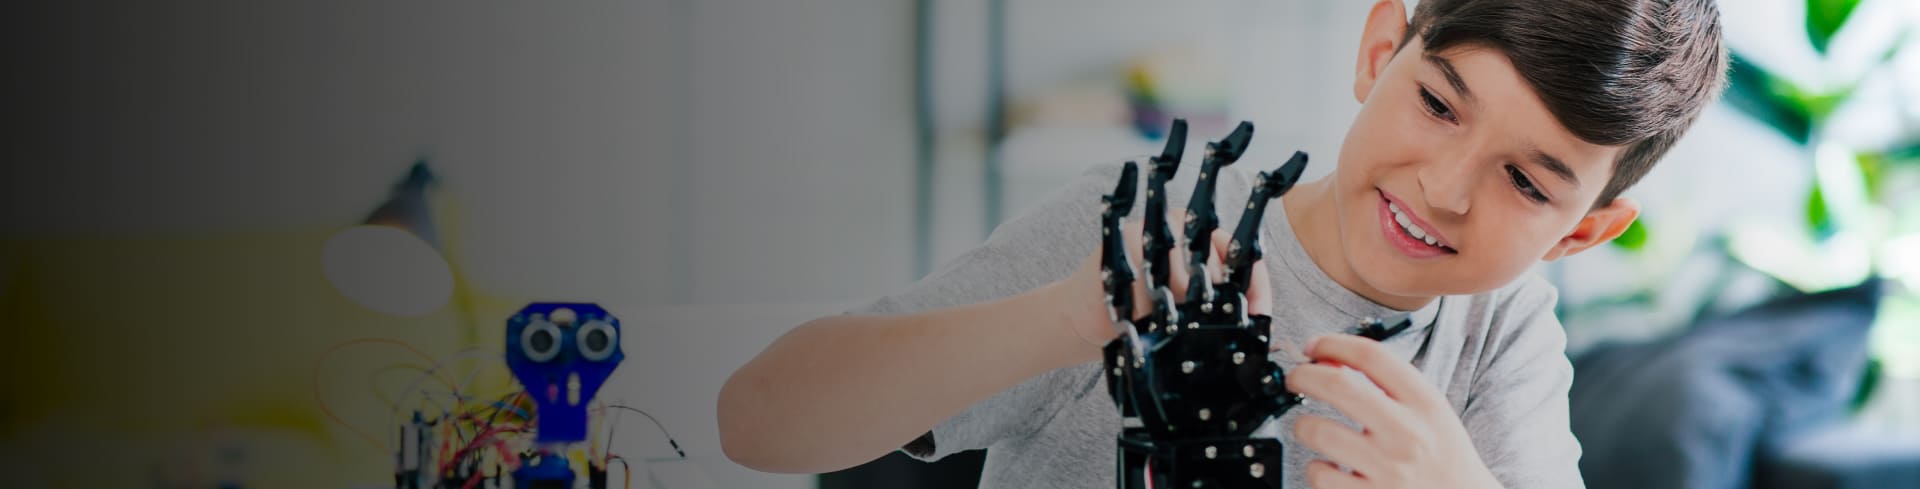 Diseña tu primer robot: integrando IA en robótica